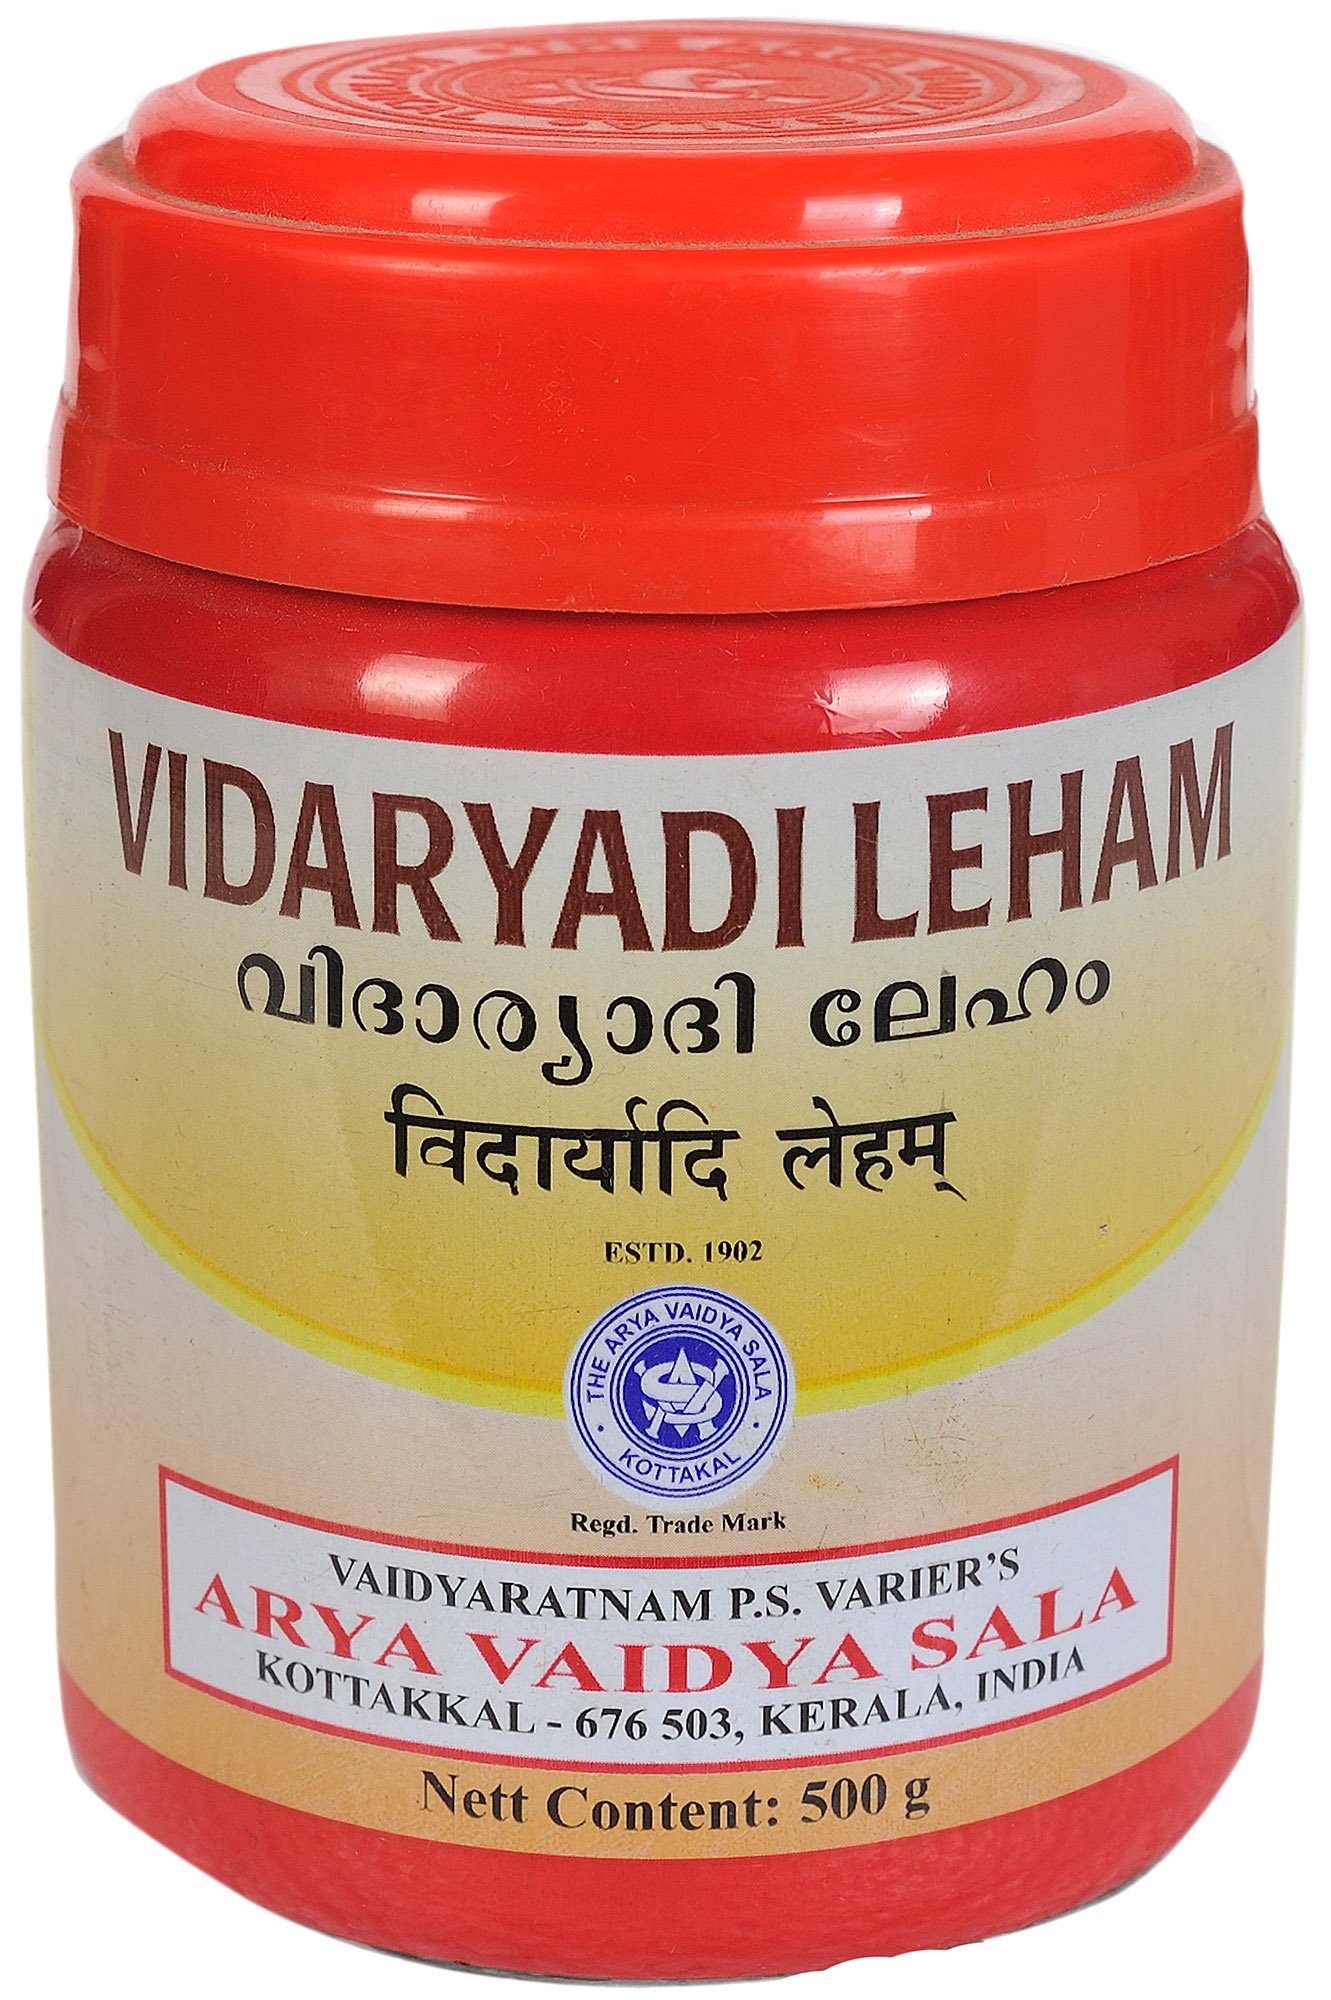 Vidaryadi Leham - book cover